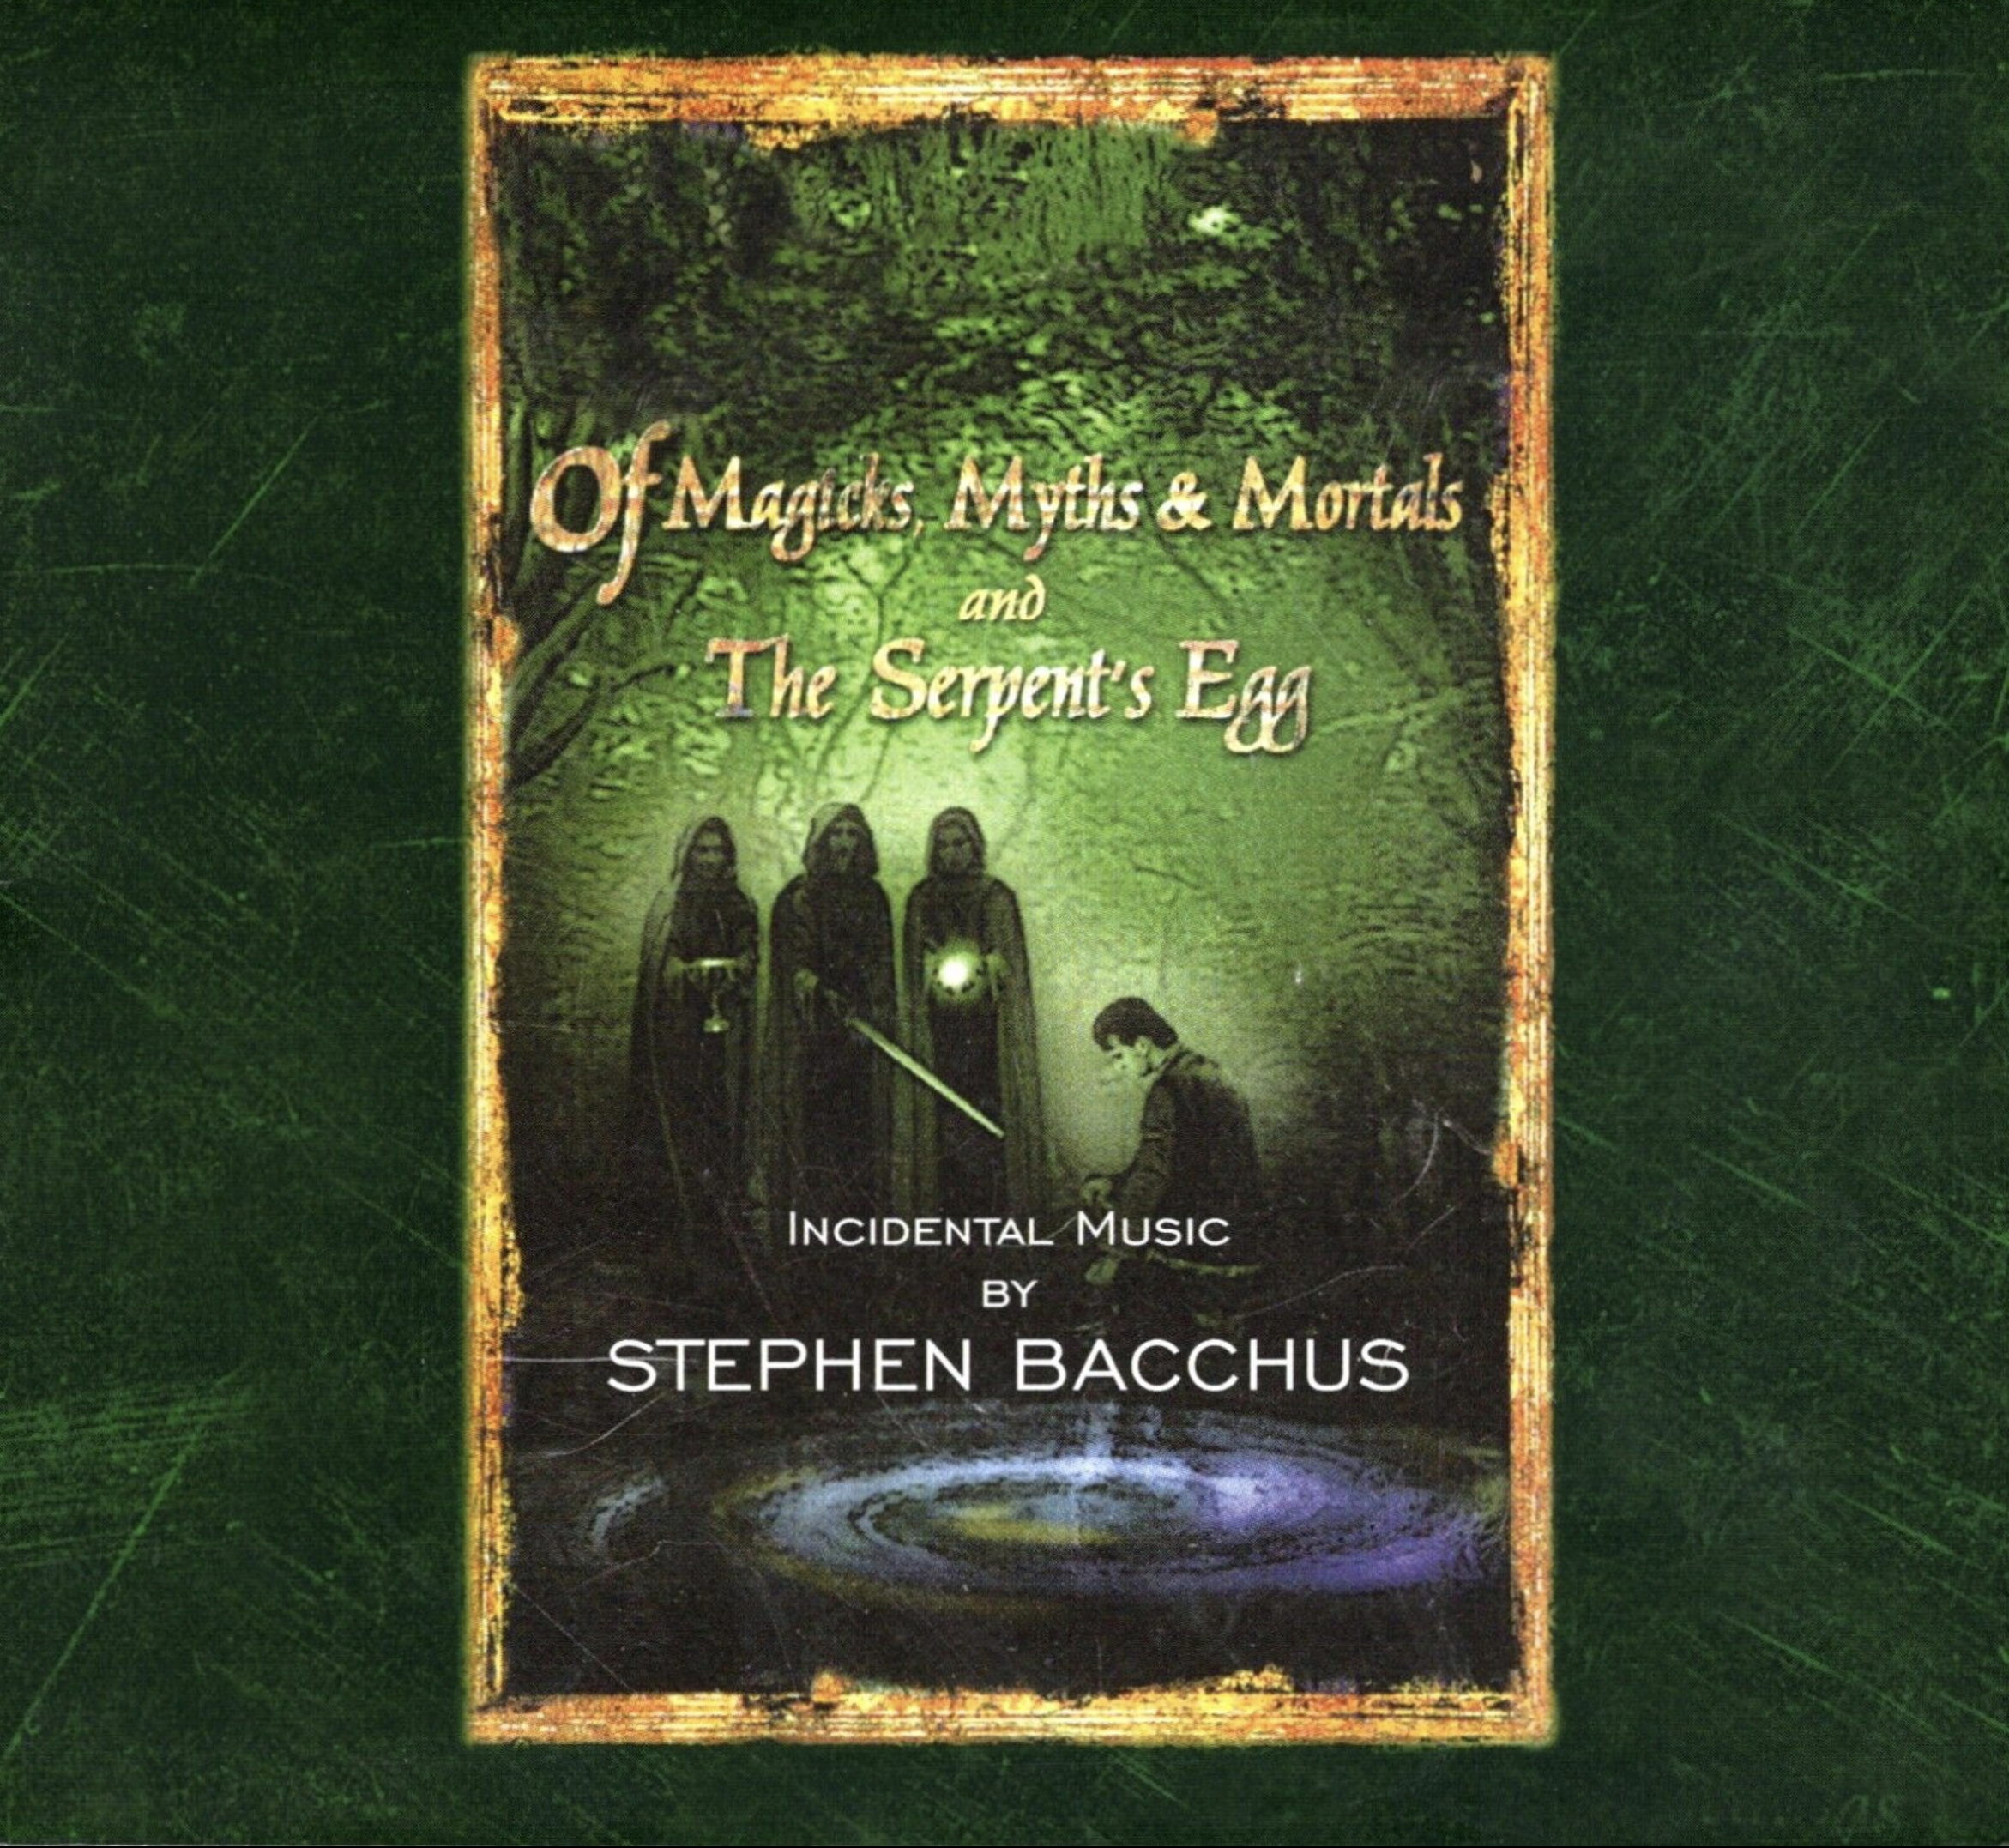 Of Magicks, Myths & Mortals